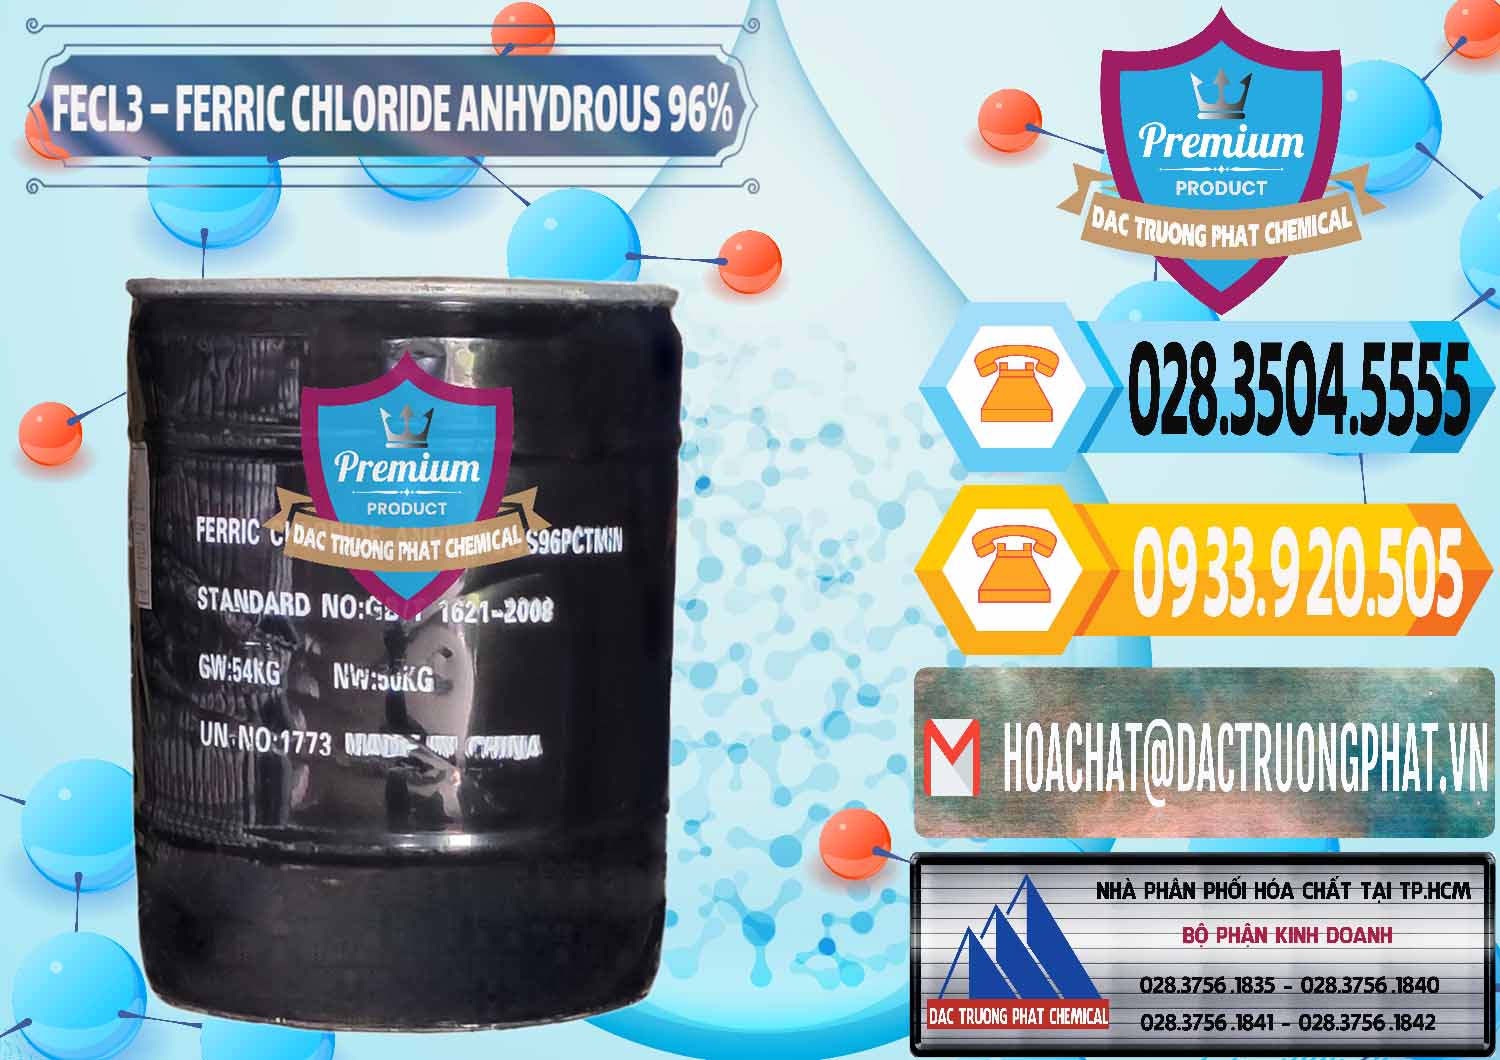 Cty chuyên bán và phân phối FECL3 – Ferric Chloride Anhydrous 96% Trung Quốc China - 0065 - Chuyên cung cấp - nhập khẩu hóa chất tại TP.HCM - hoachattayrua.net